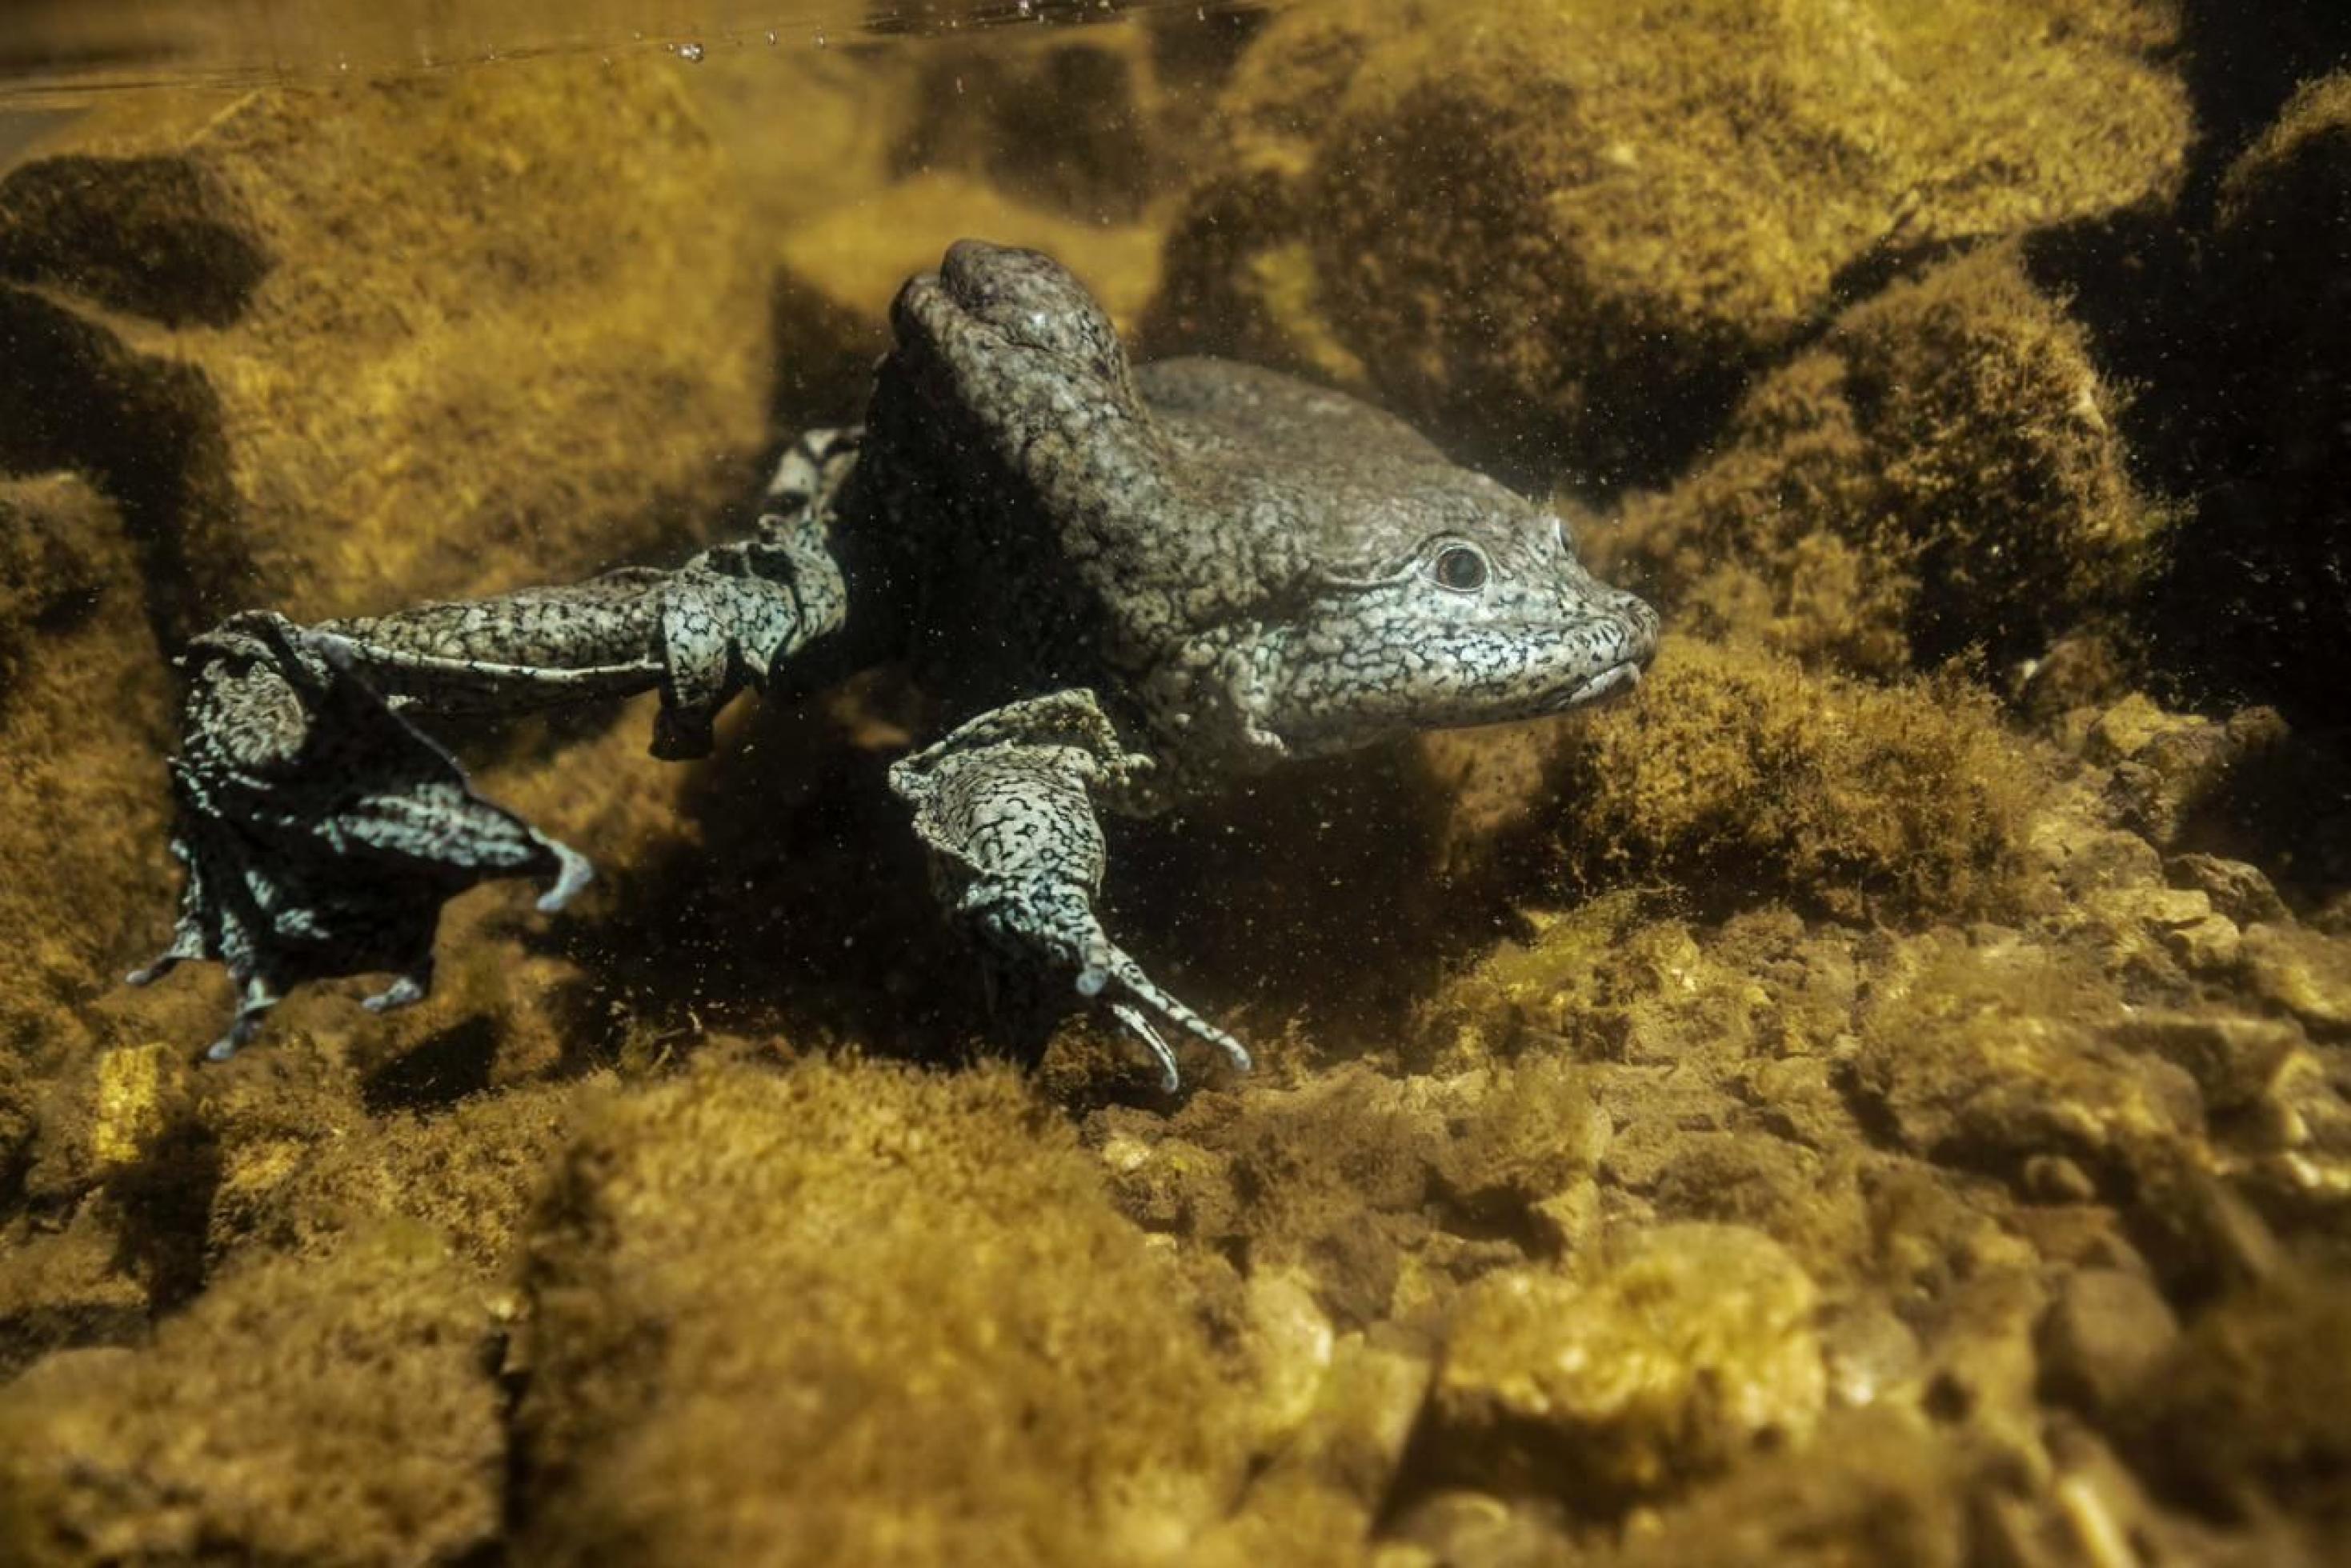 Auf dem Grund eines Gewässers sieht man einen grauen gesprenkelten Frosch mit langen Beinen und faltiger Haut.